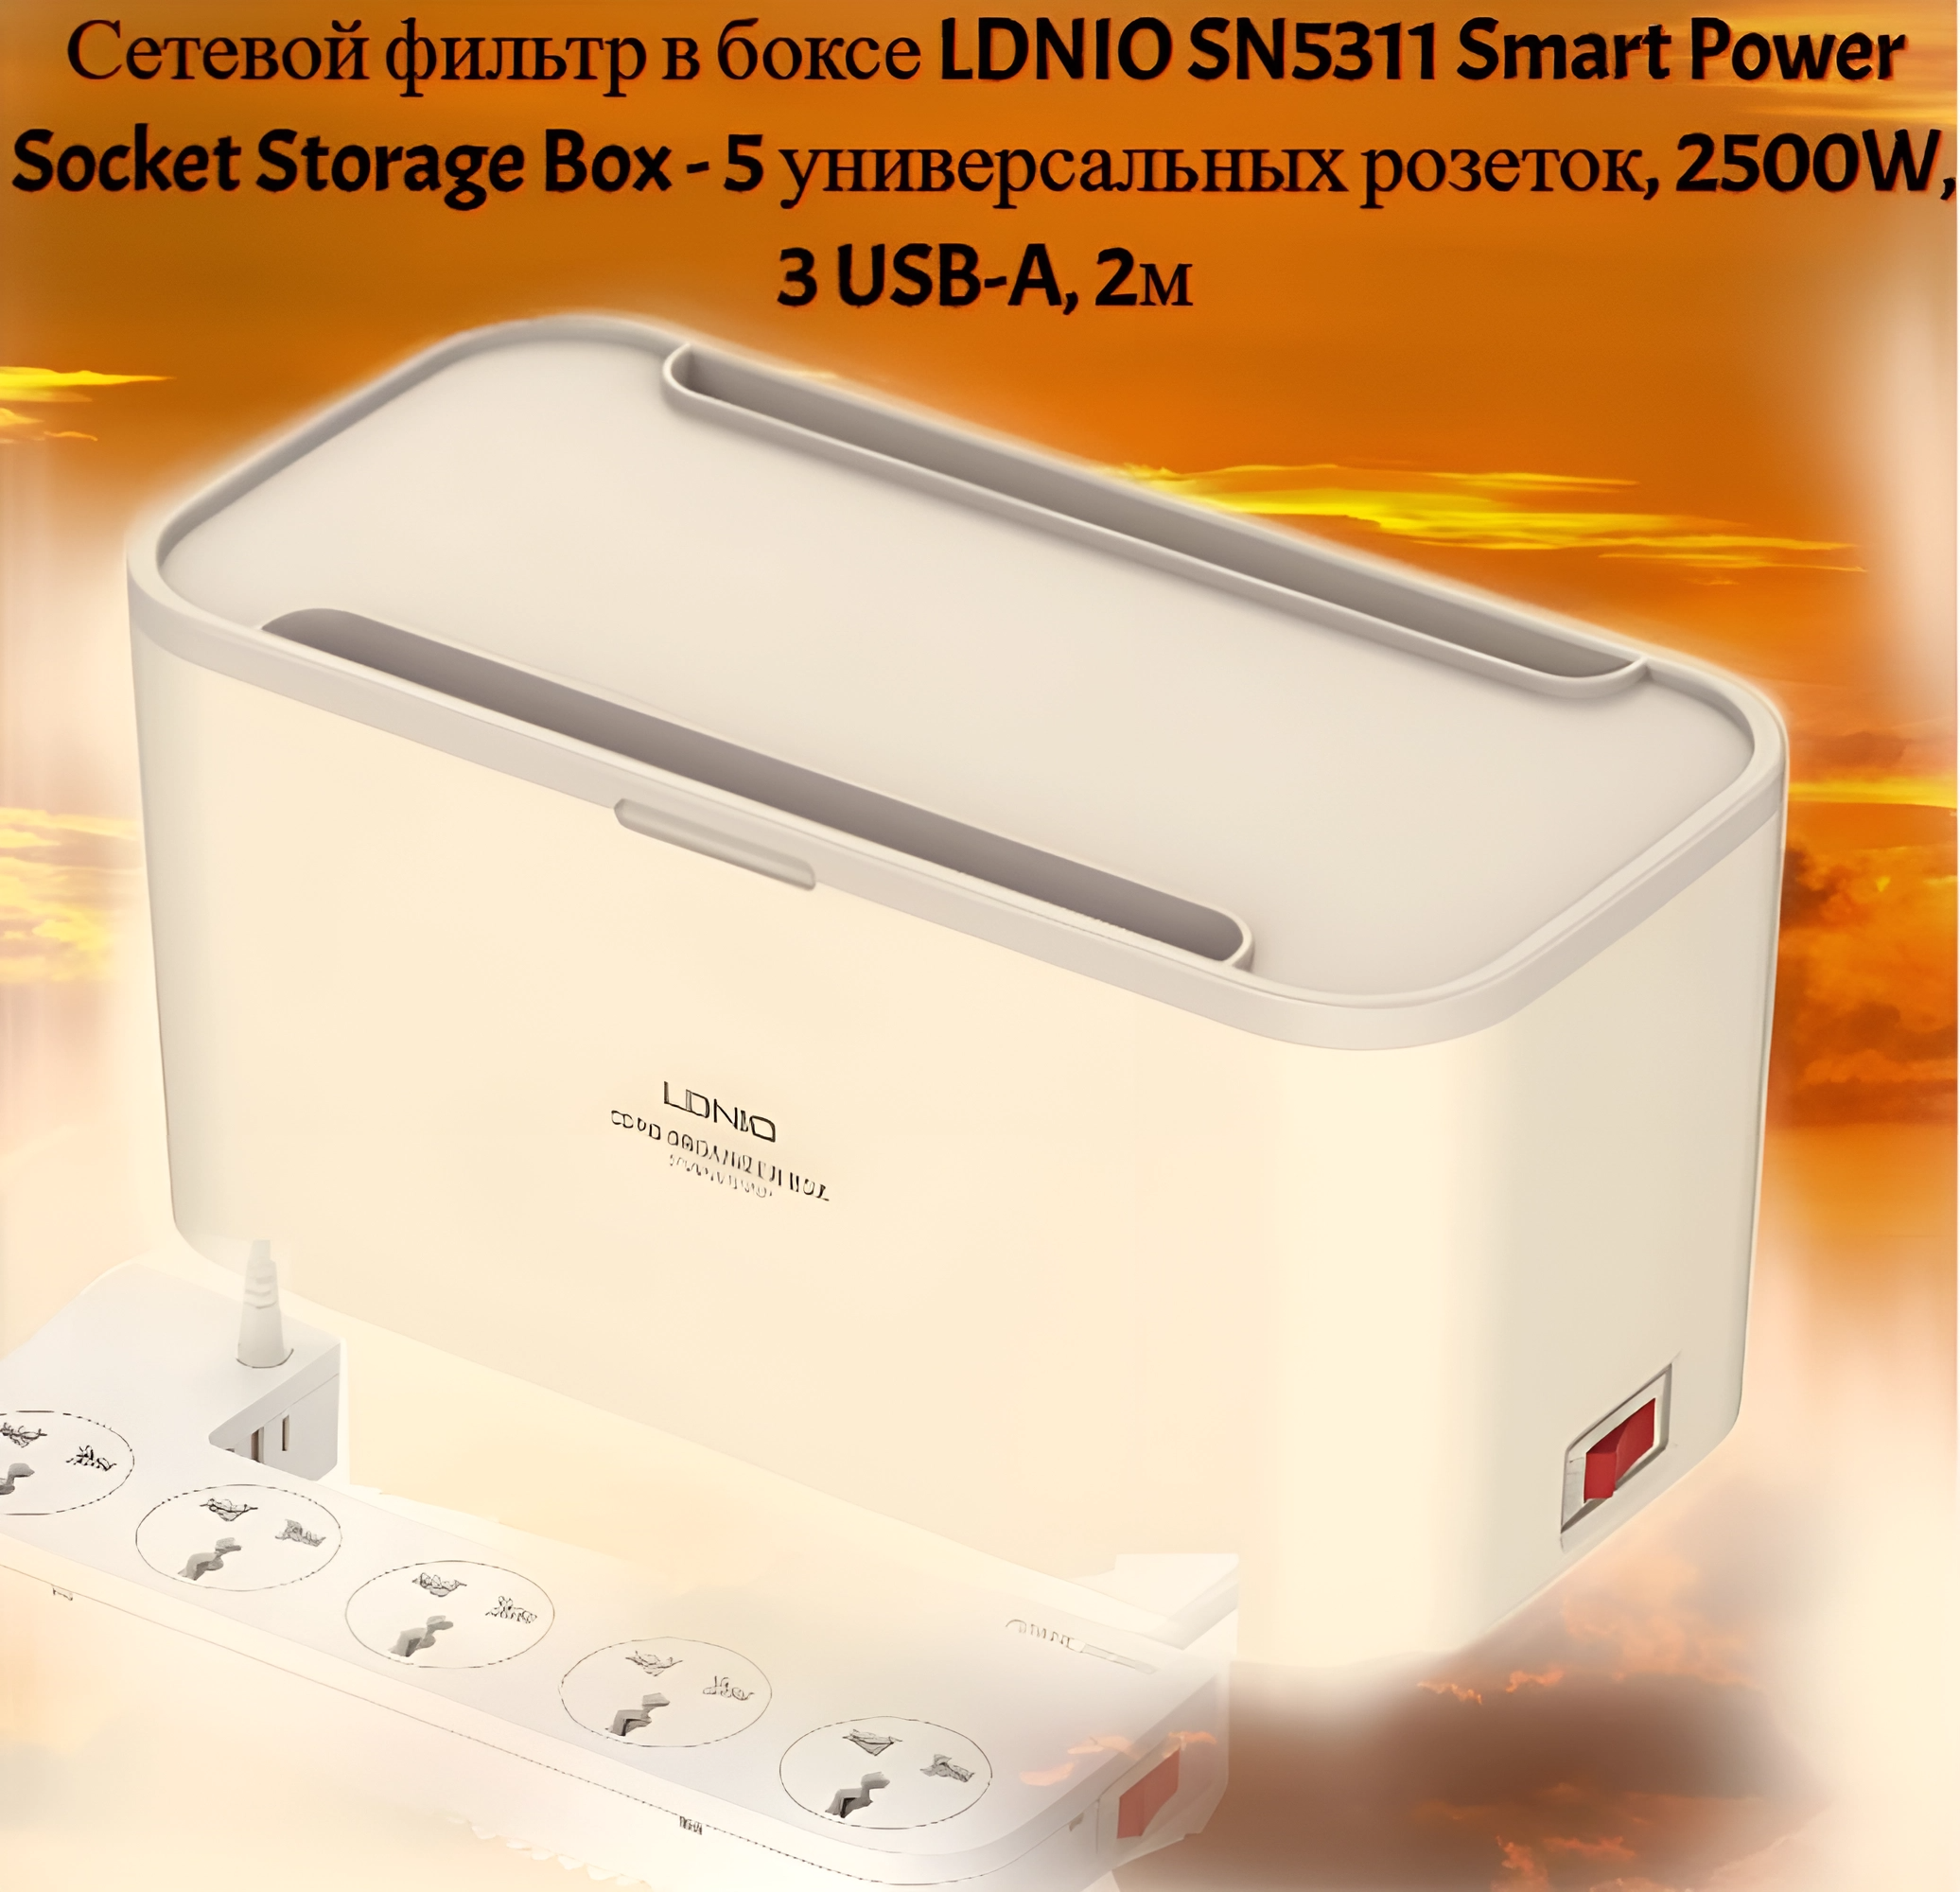 Сетевой фильтр в боксе LDNIO SN5311 Smart Power Socket Storage Box - 5 универсальных розеток 2500W 3 USB-A 2м